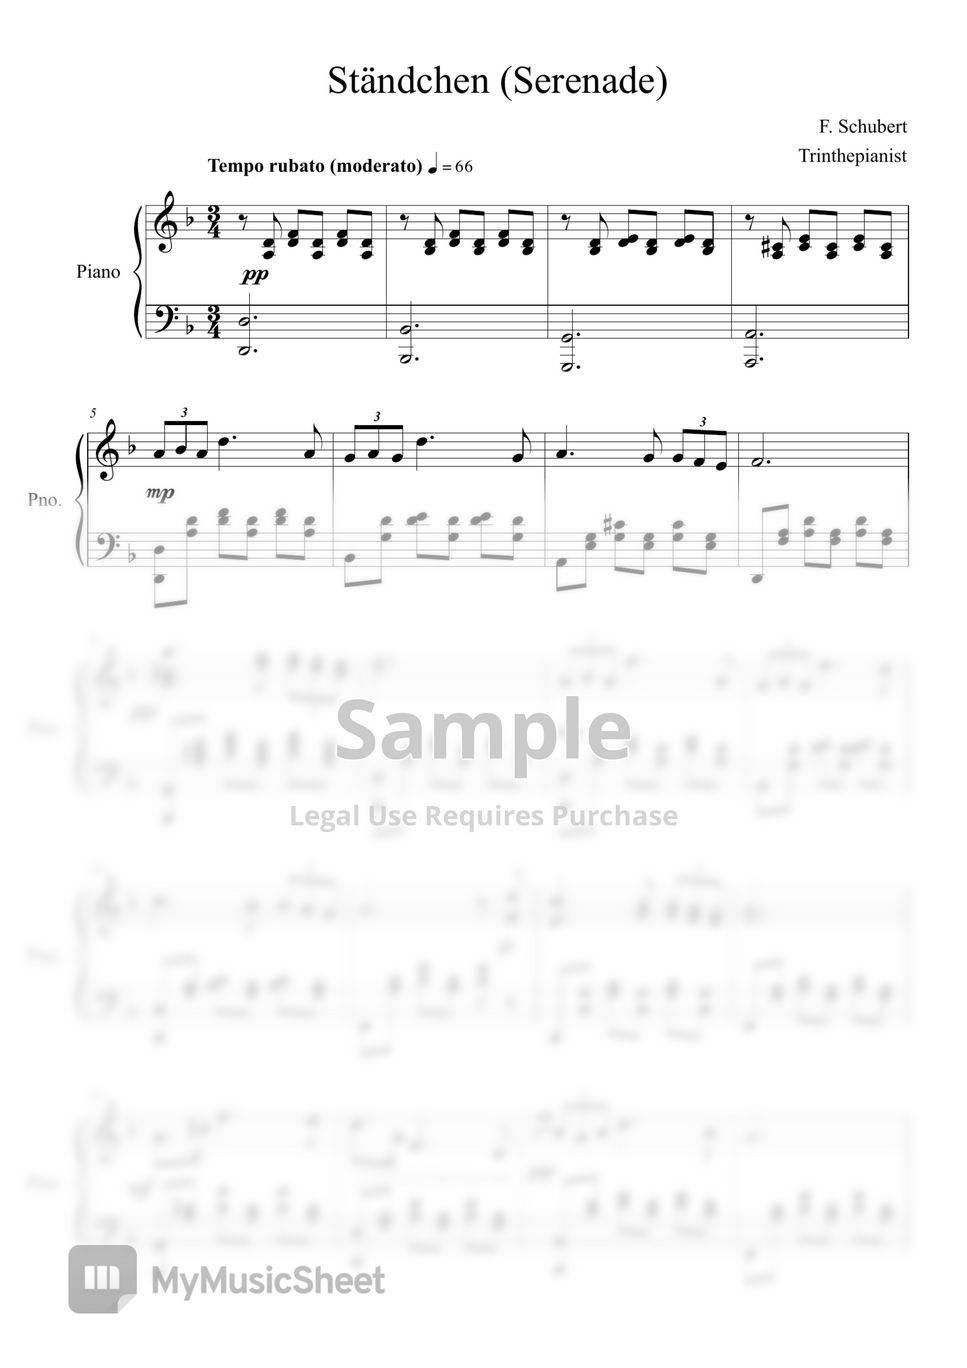 F. Schubert - Serenade - Ständchen (Swan song D957) - Franz Schubert by Trinthepianist